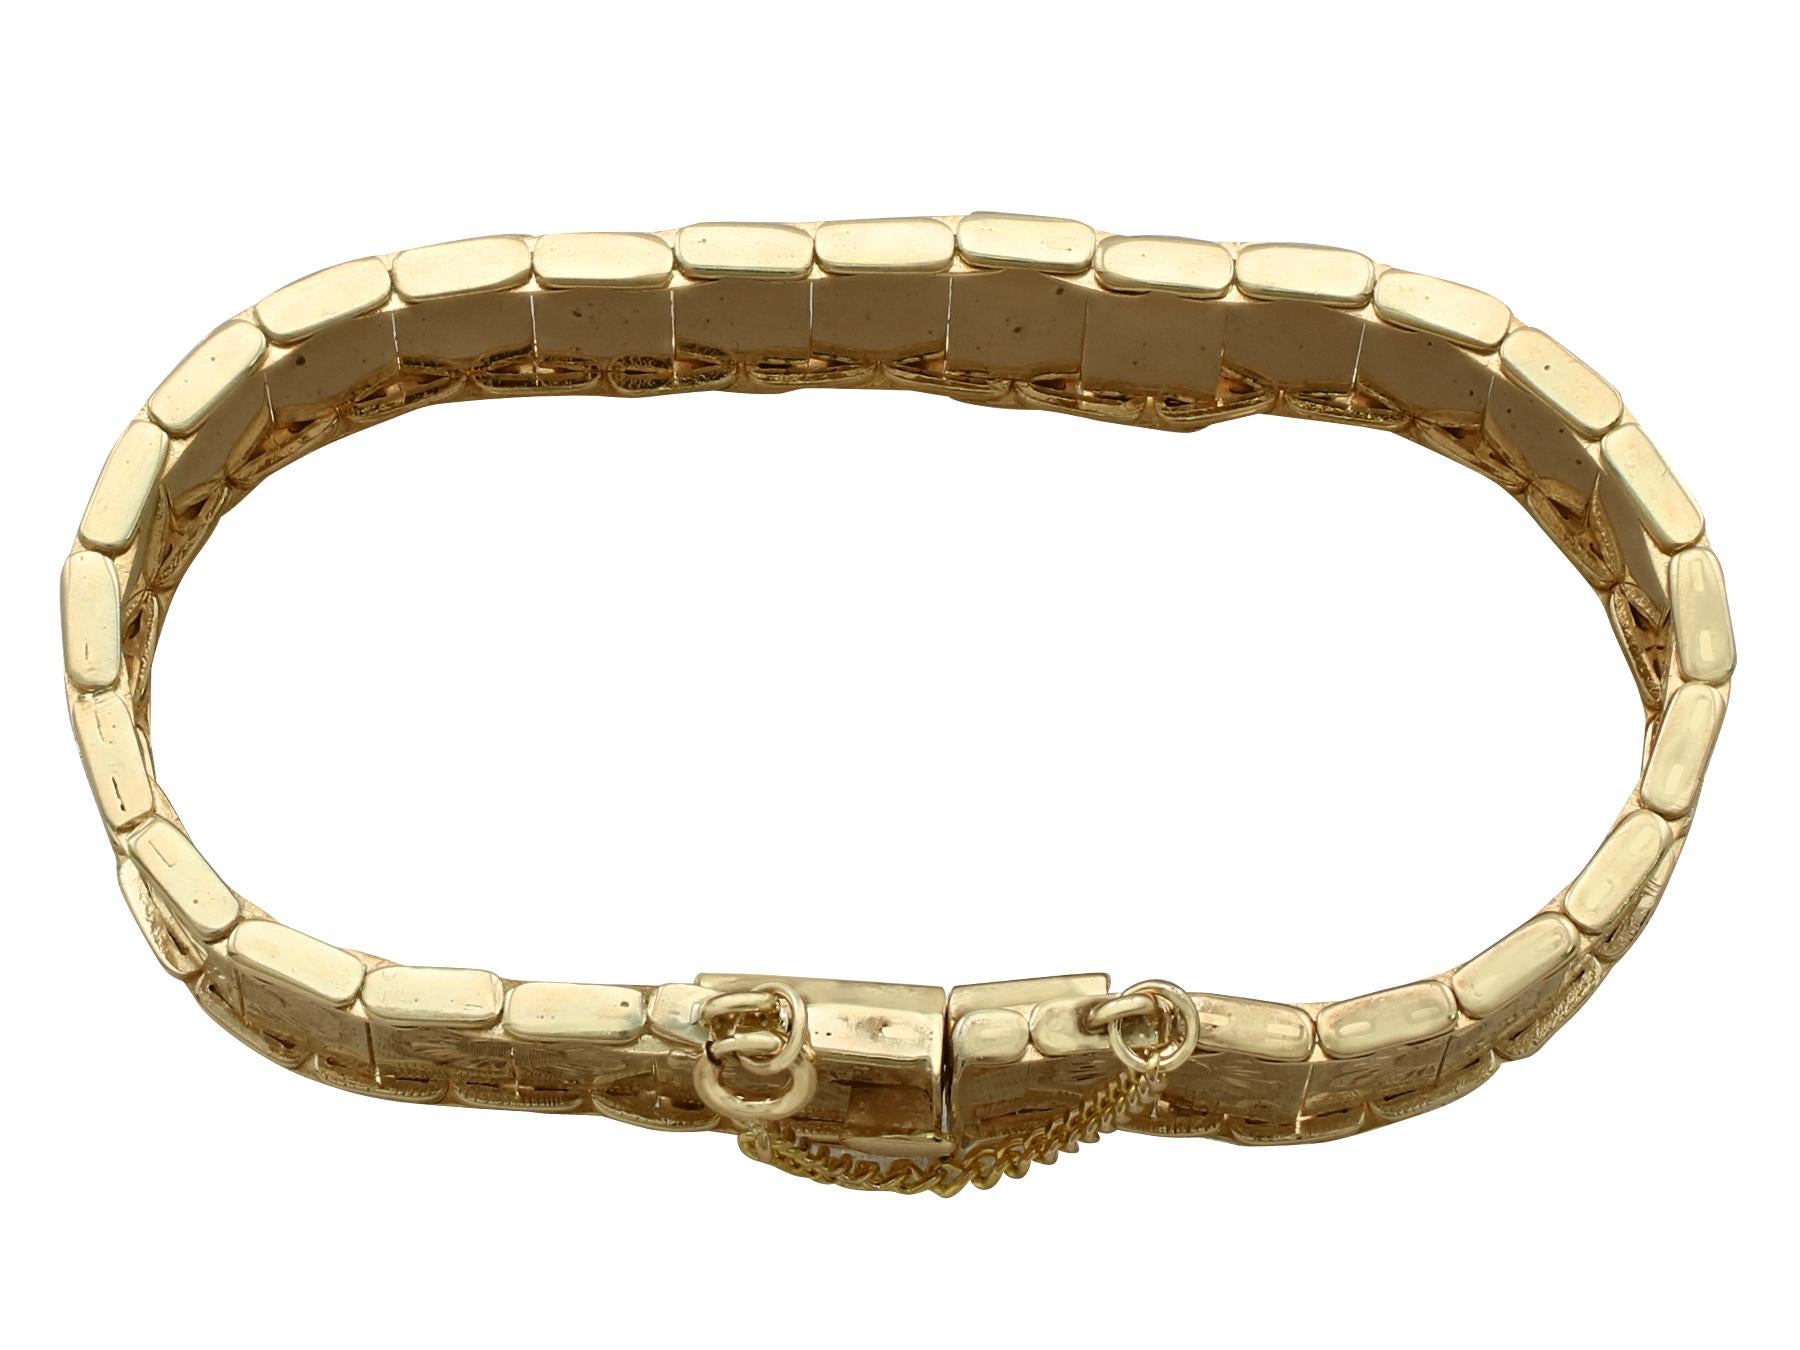 Ein beeindruckendes Armband aus 9-karätigem Gelbgold aus den 1960er Jahren, das Teil unserer vielfältigen Vintage- und Nachlassschmuck-Kollektionen ist.

Dieses feine und beeindruckende Vintage-Armband wurde aus 9 Karat Gelbgold gefertigt.

Das voll